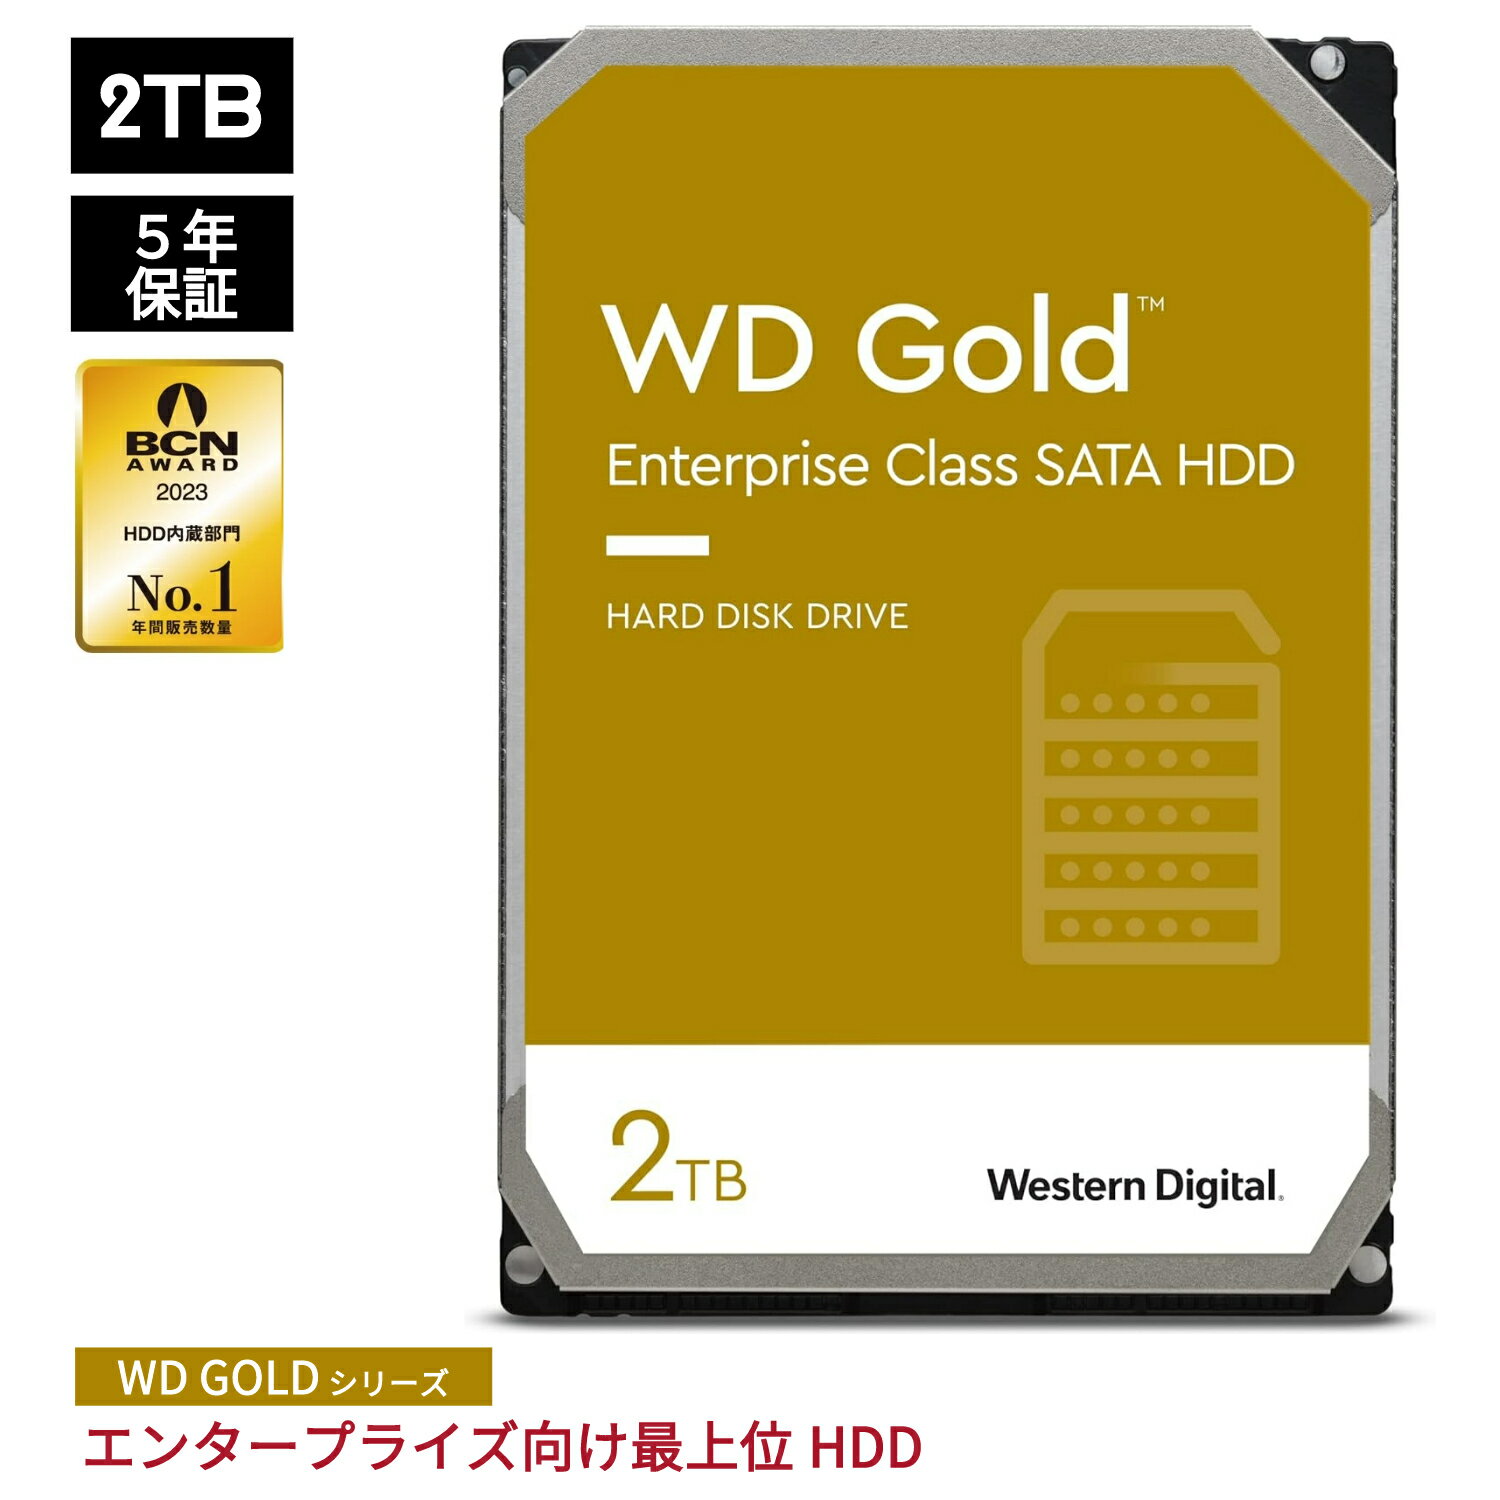  Western Digital HDD 2TB WD Gold エンタープライズ 3.5インチ 内蔵HDD 保証5年 WD2005FBYZ | 内蔵hdd パソコン ハードディスクドライブ ec 増設 サーバー サーバ 省電力 PCパーツ